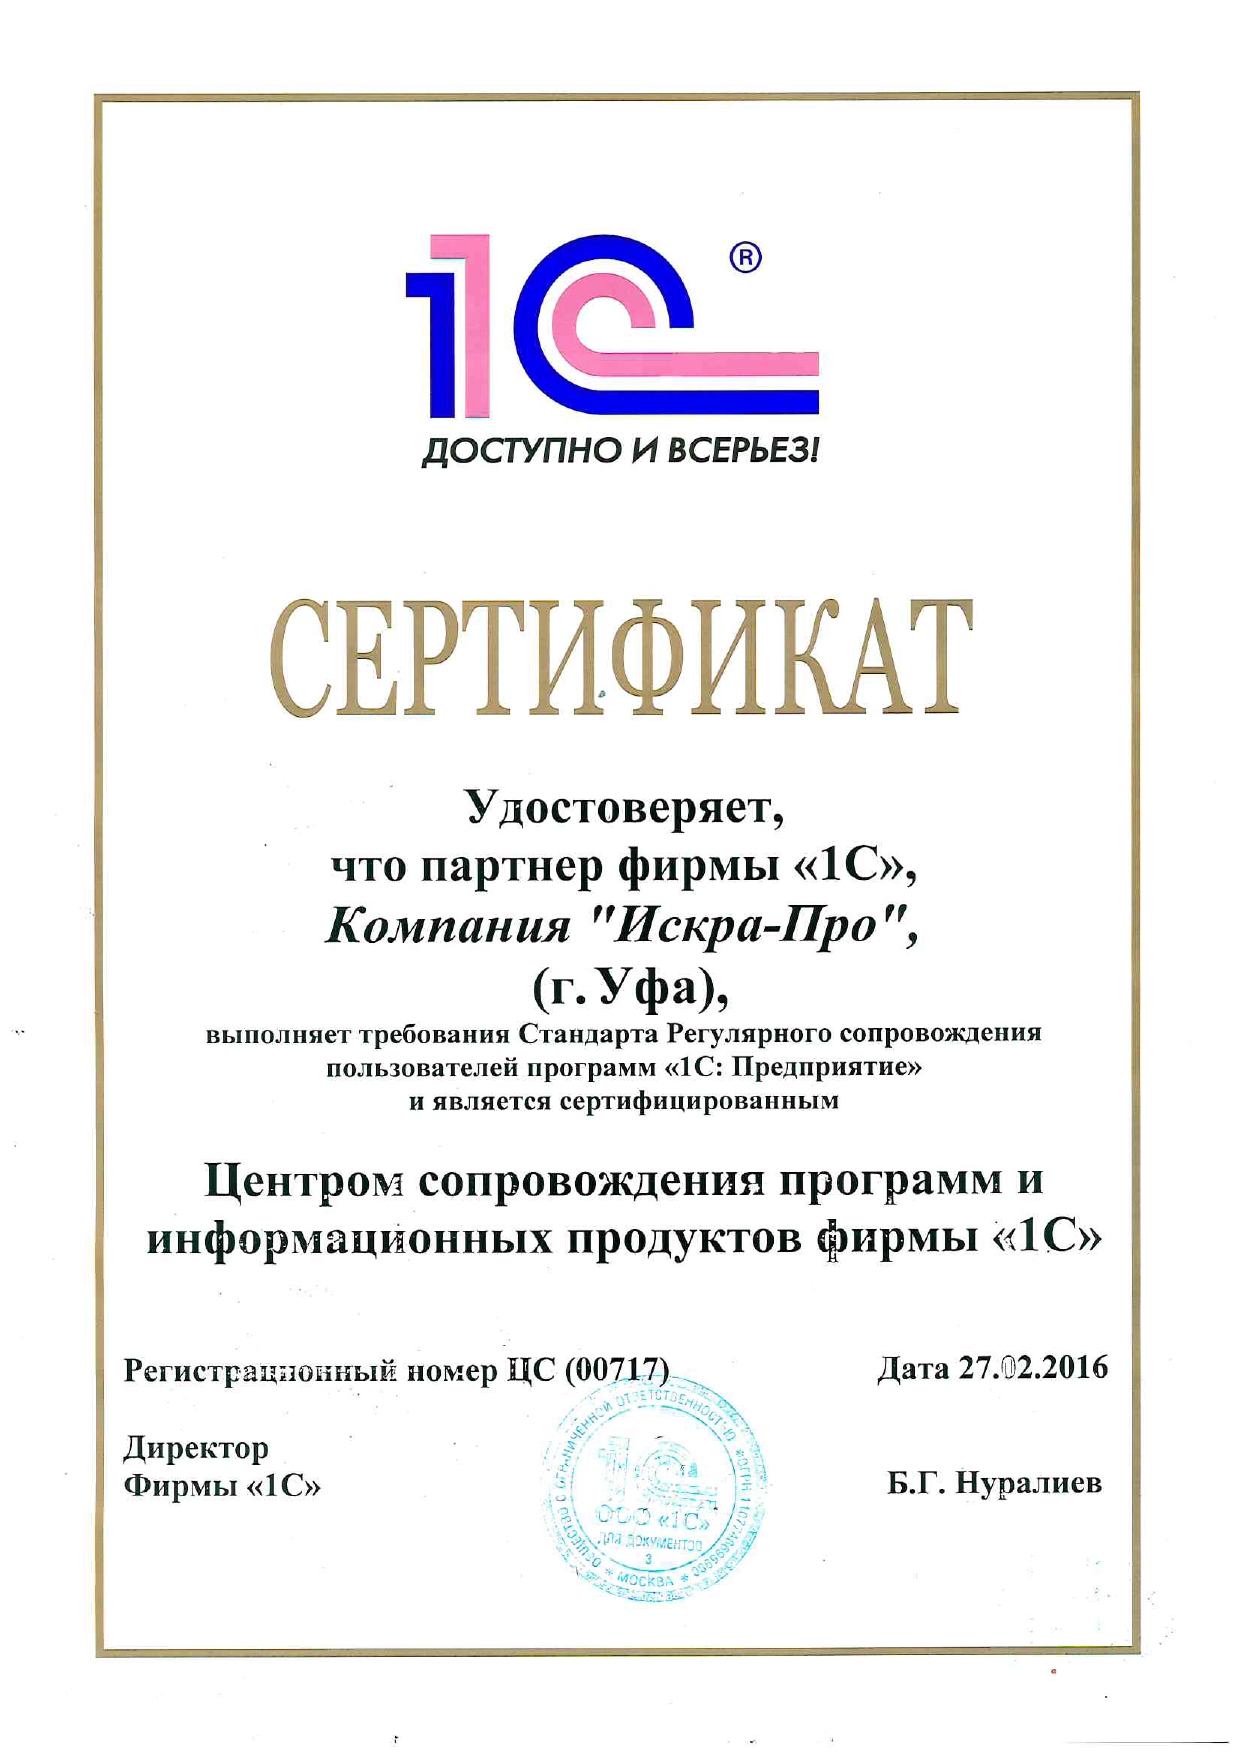 Сертифицированный центр сопровождения 1С